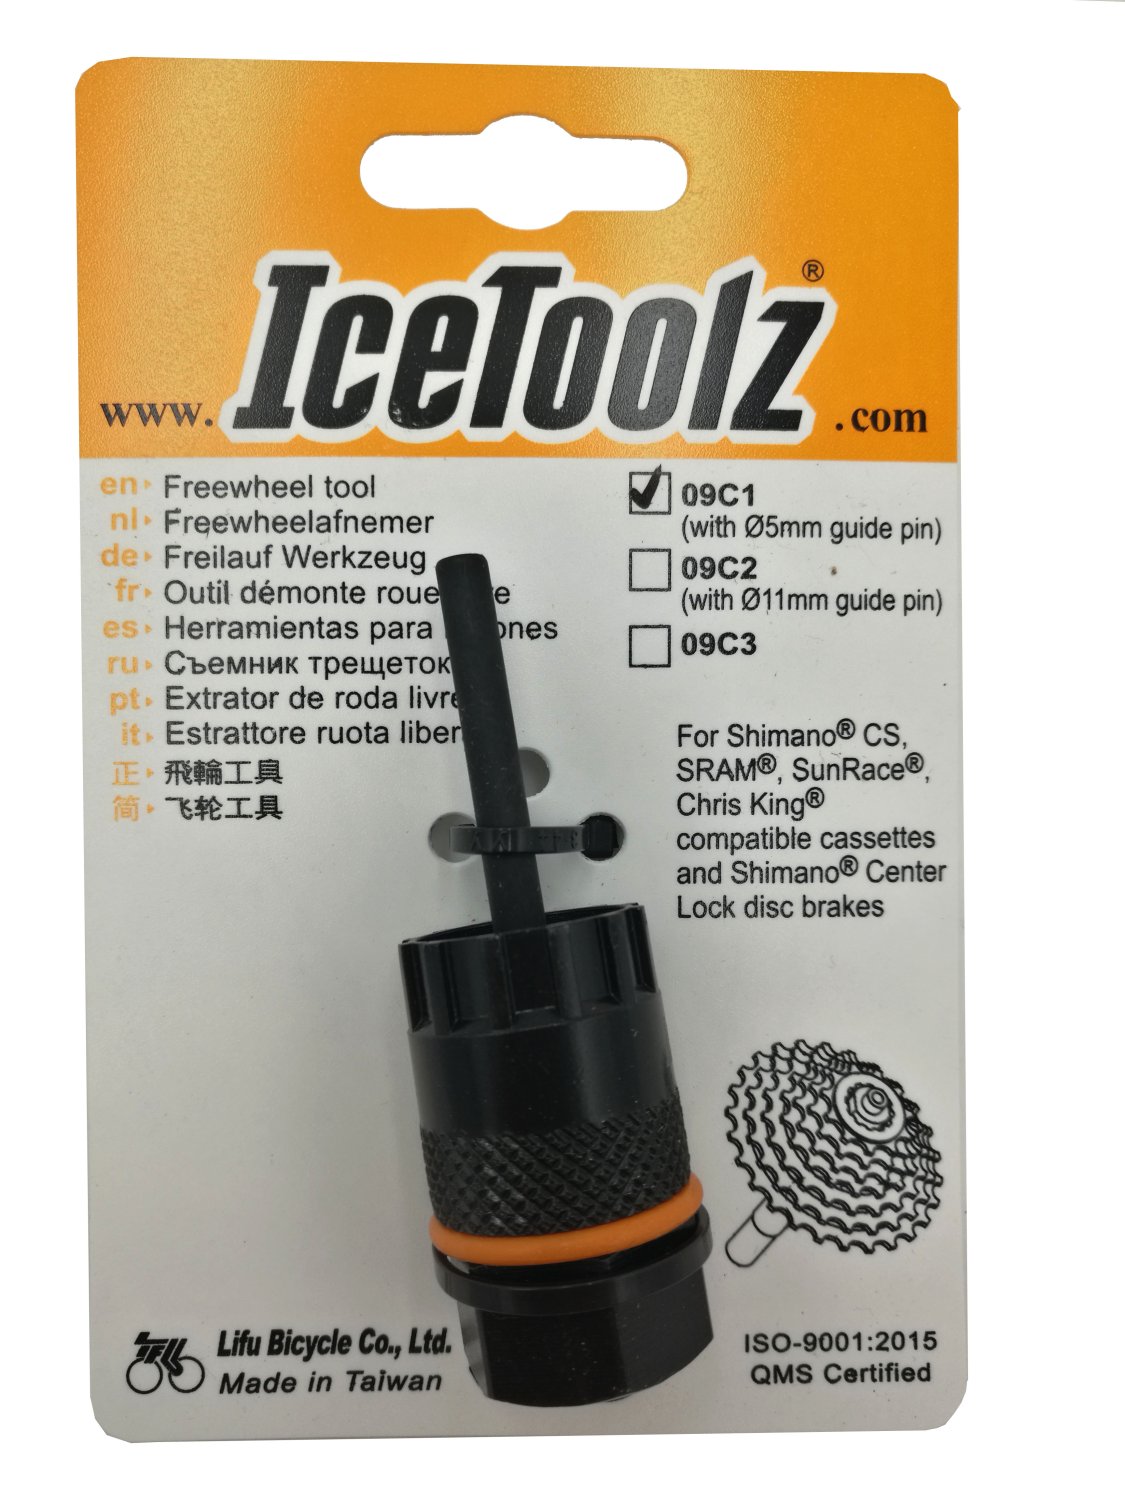 Съемник для кассет ICE TOOLZ Shimano CS/Center Lock, с направляющей , Сr-V сталь, 09C1 съемник замка цепи ice toolz сr mo сталь 62d1